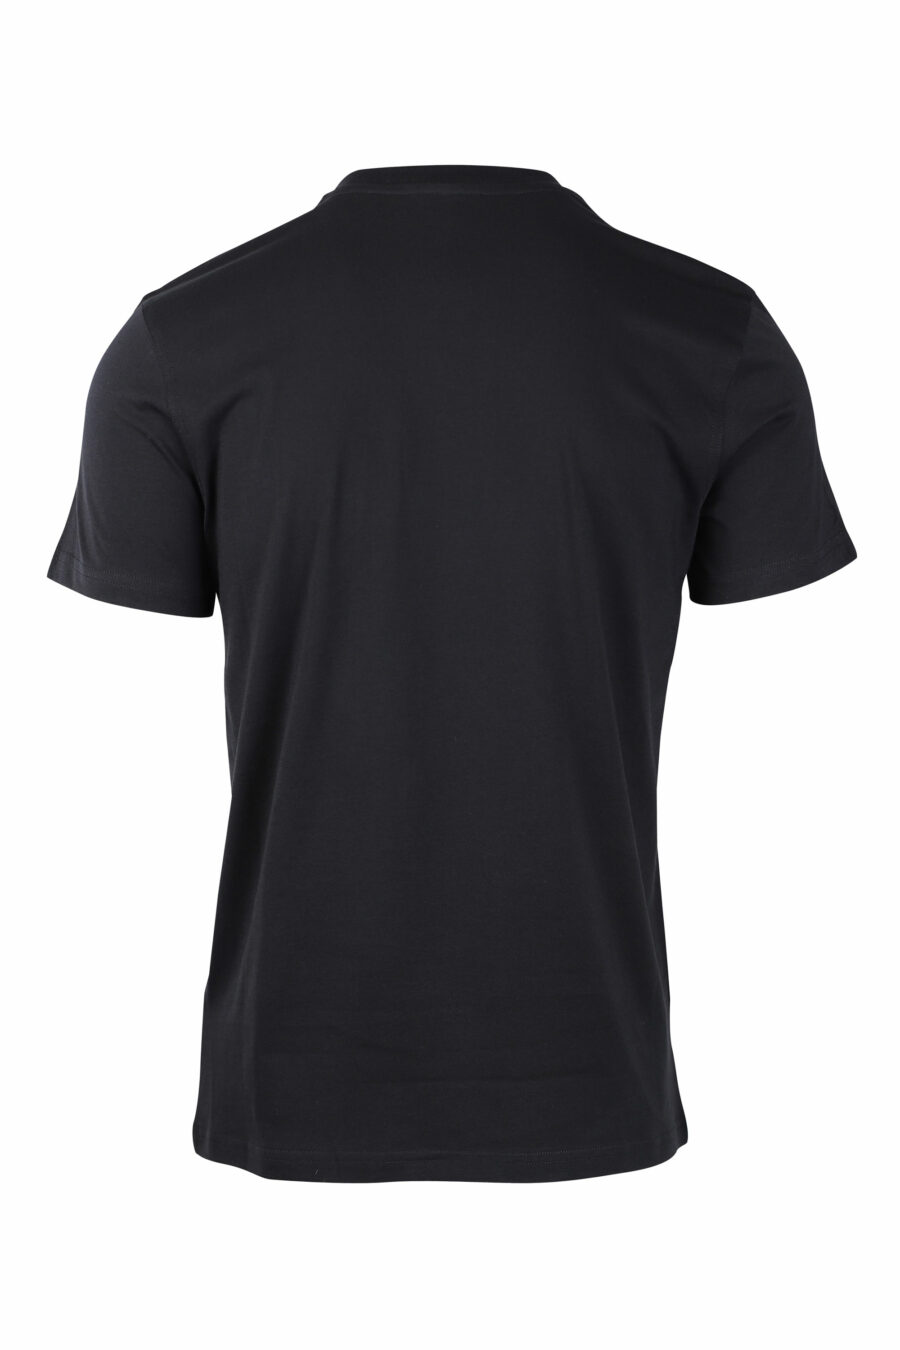 Moschino - Camiseta negra con maxilogo oso monocromático - BLS Fashion